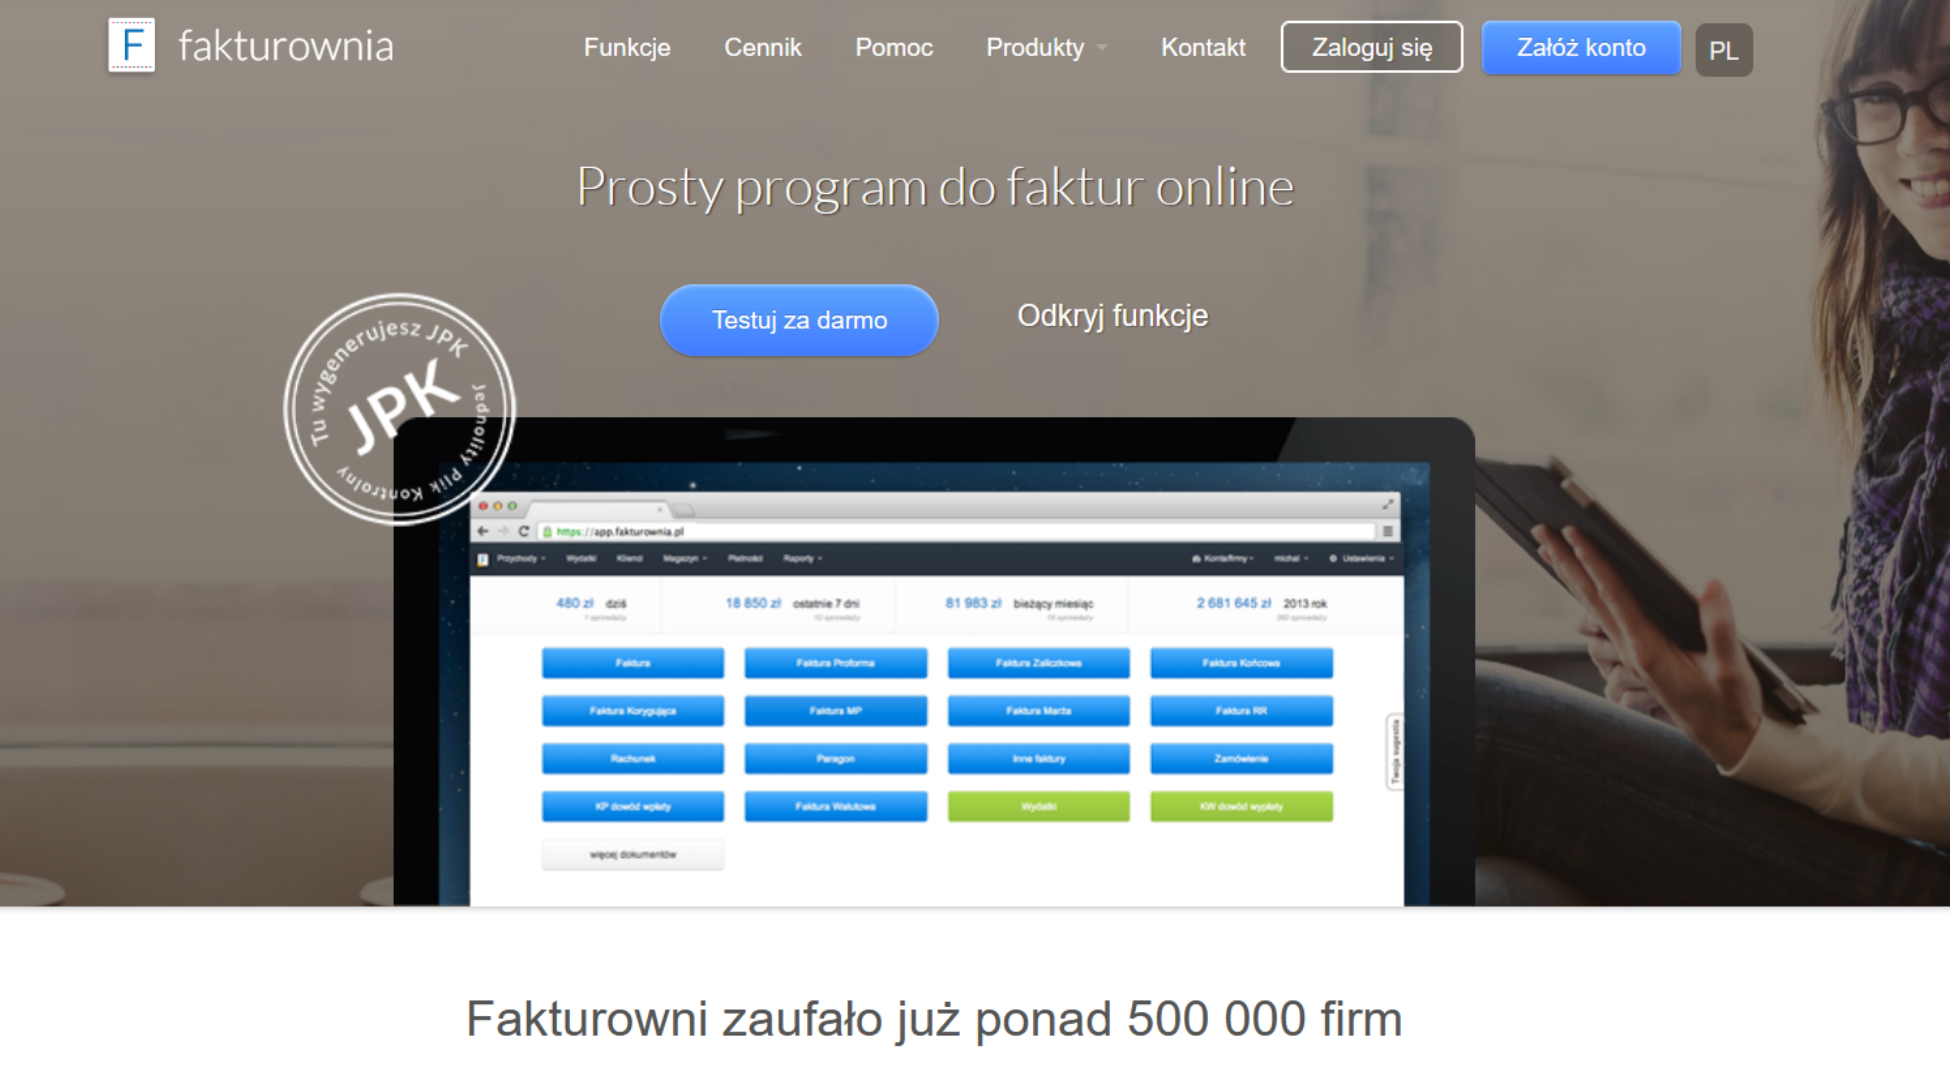 Fakturownia.pl prosty program do fakturowania